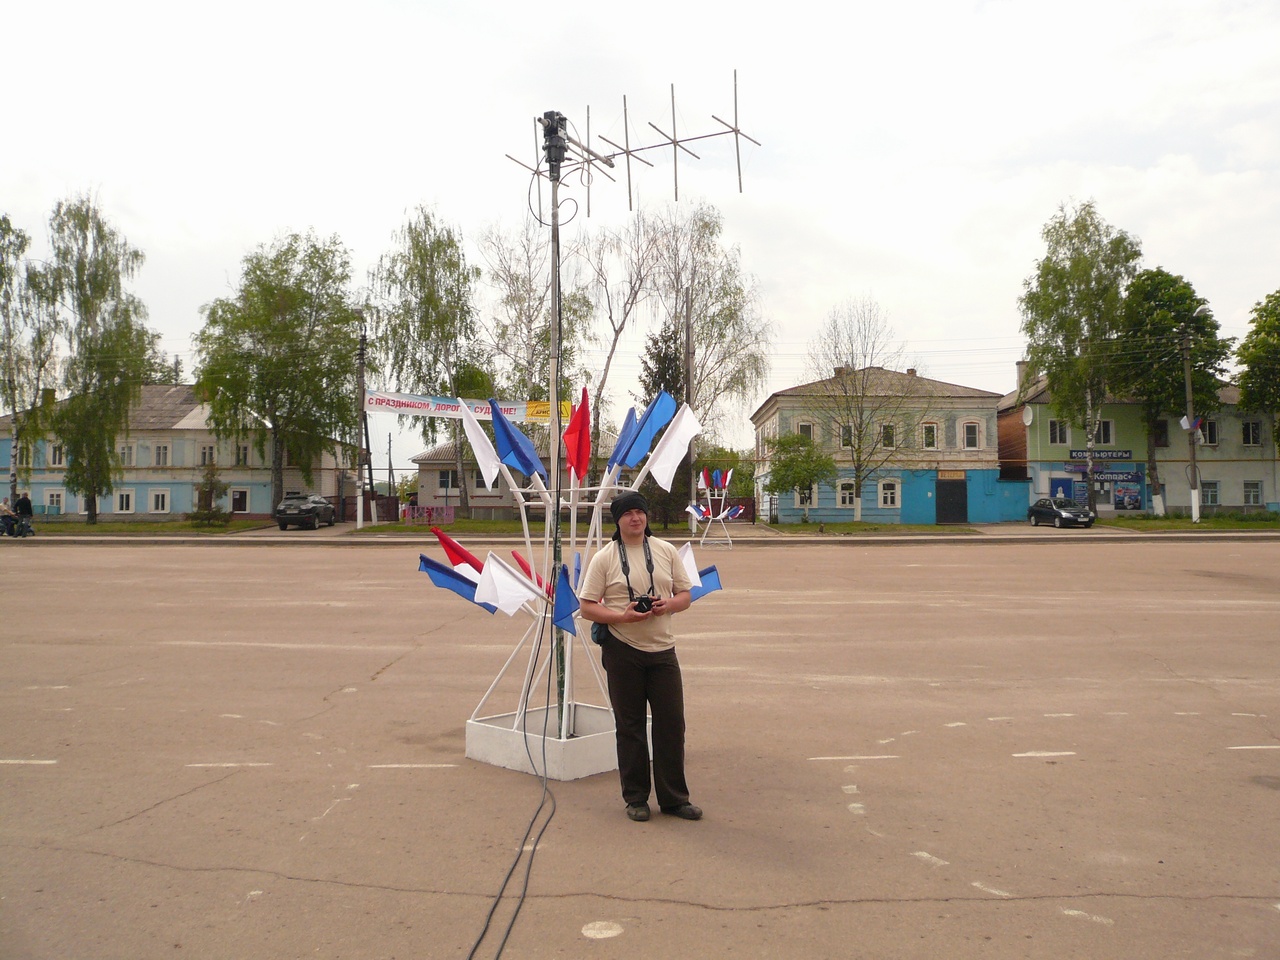 Радиовстреча с МКС из города Суджа, Курская область 